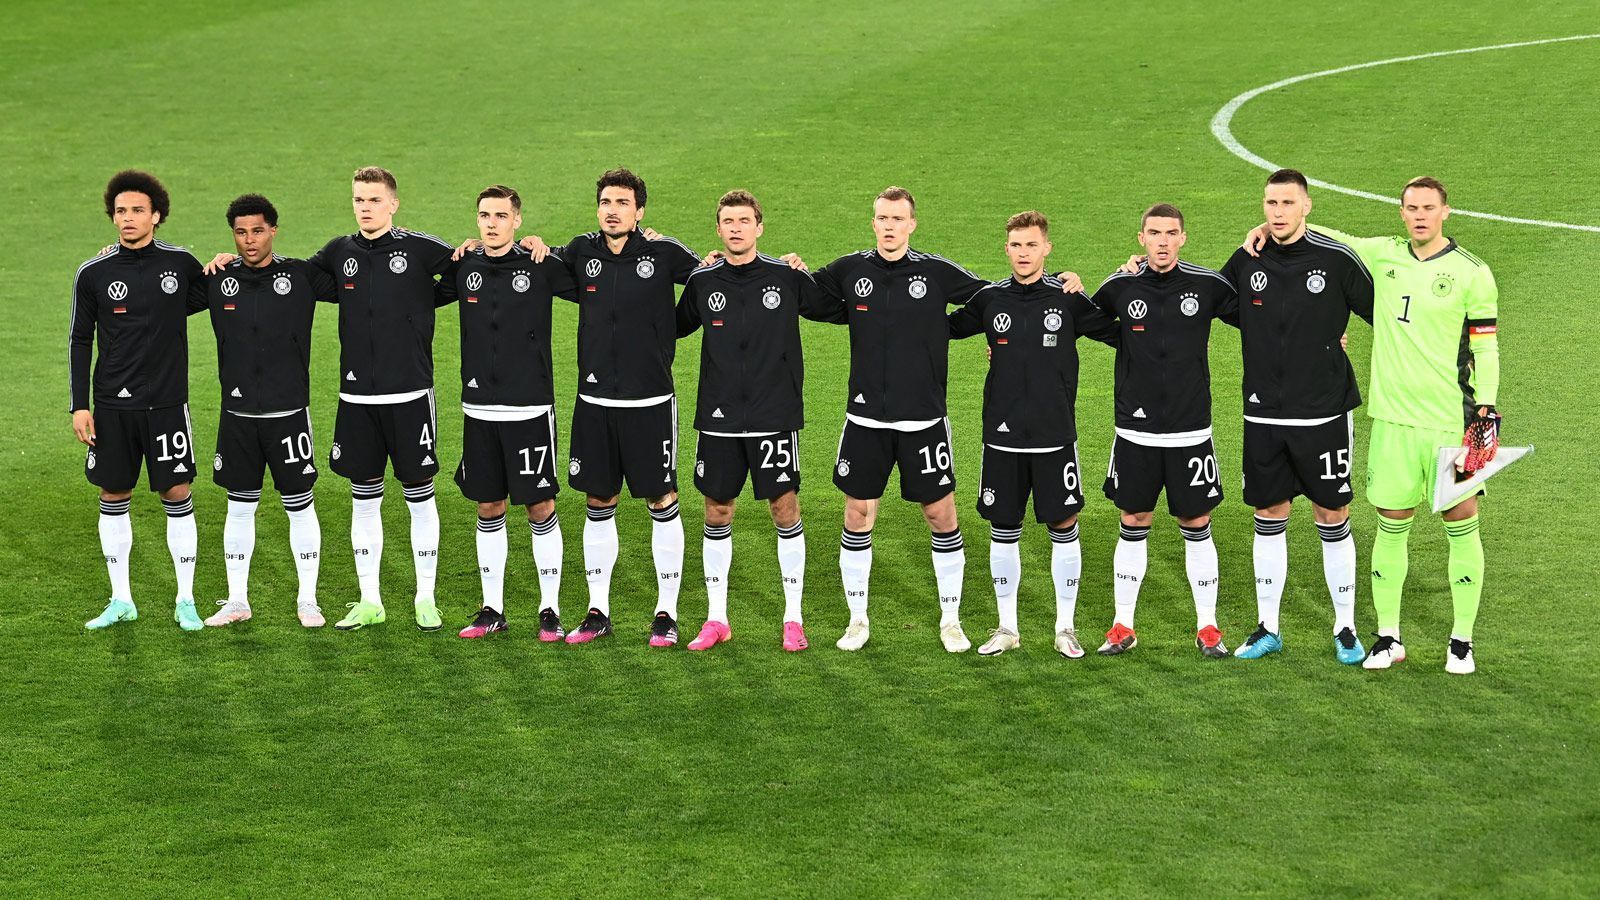 
                <strong>Müller und Hummels feiern DFB-Comeback</strong><br>
                Beim 1:1 gegen Dänemark feierten Mats Hummels und Thomas Müller ihr Comeback im DFB-Dress - so lief die Rückkehr der Routiniers in der deutschen Nationalmannschaft.
              